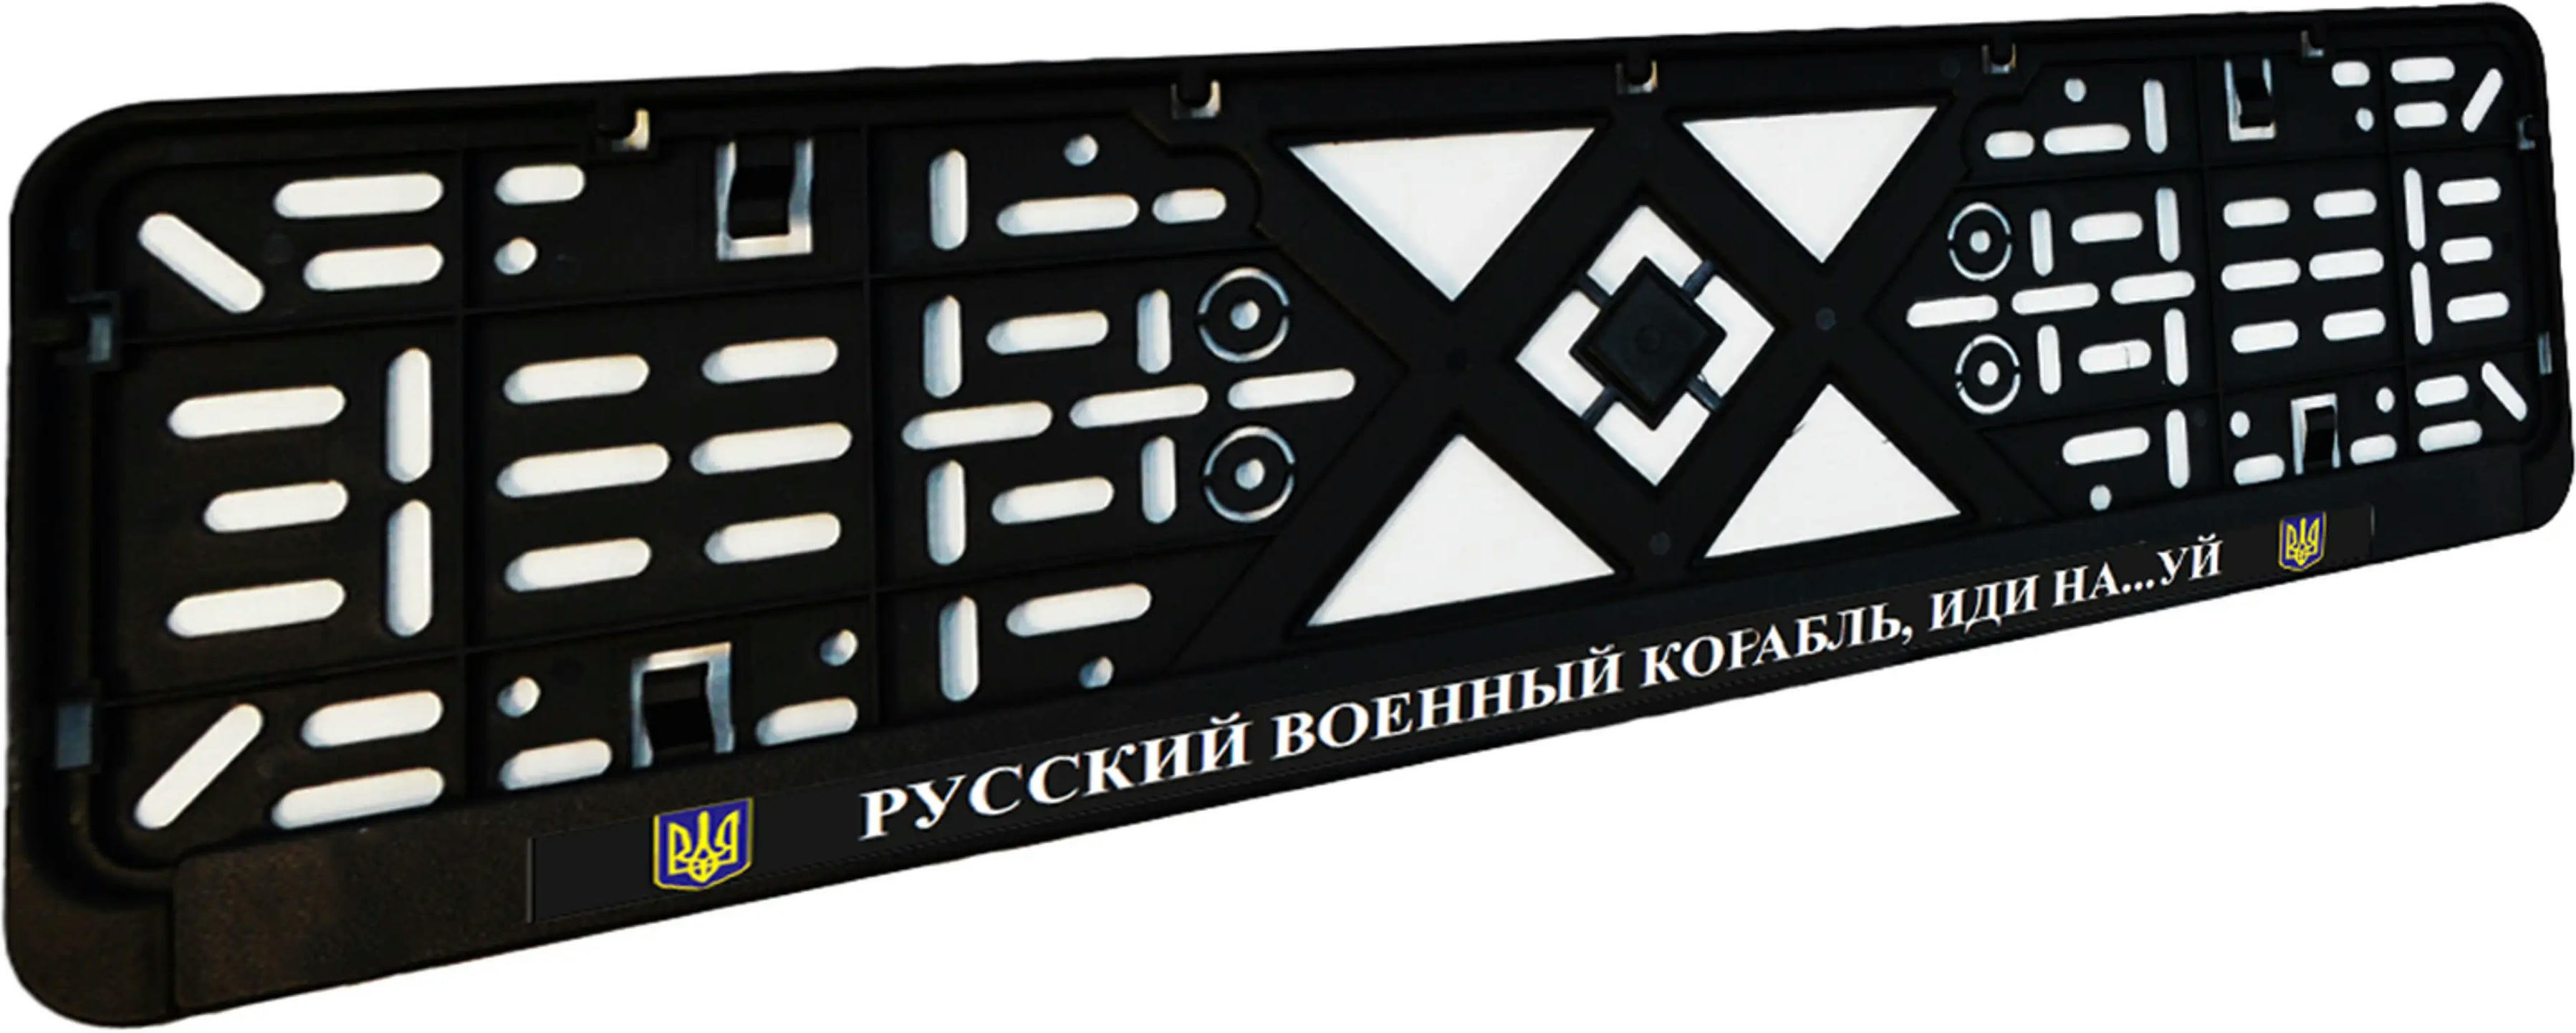 Рамка номерного знака Poputchik пластиковая патриотическая Русский военный корабль, иди на…уй (24-266-IS) фото 3